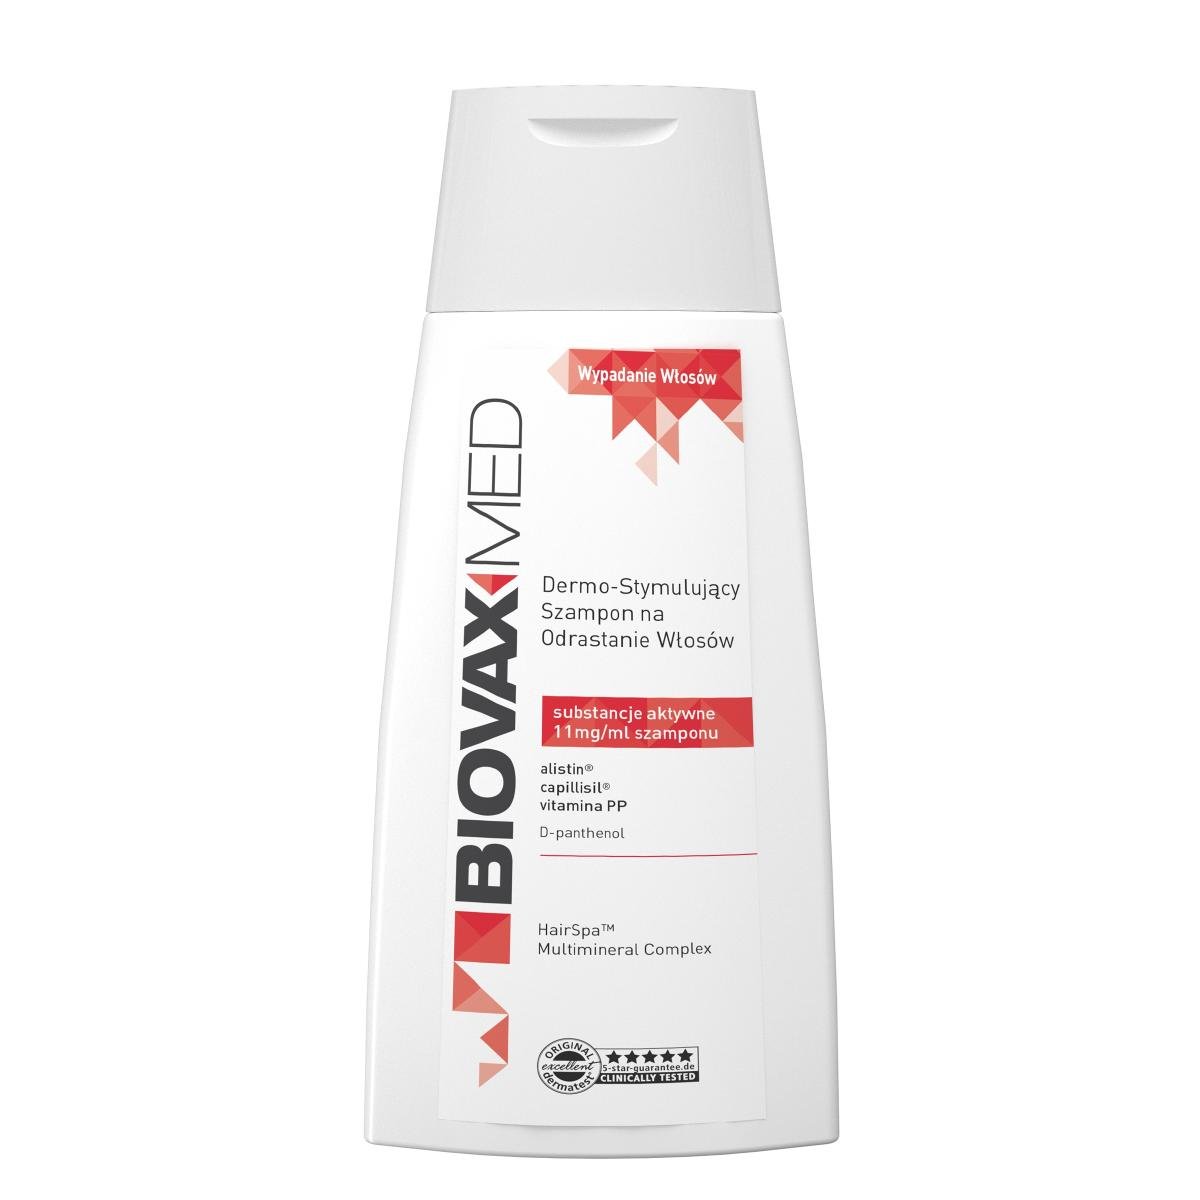 biovax med szampon dermostymulujący na odrastanie włosów opinia